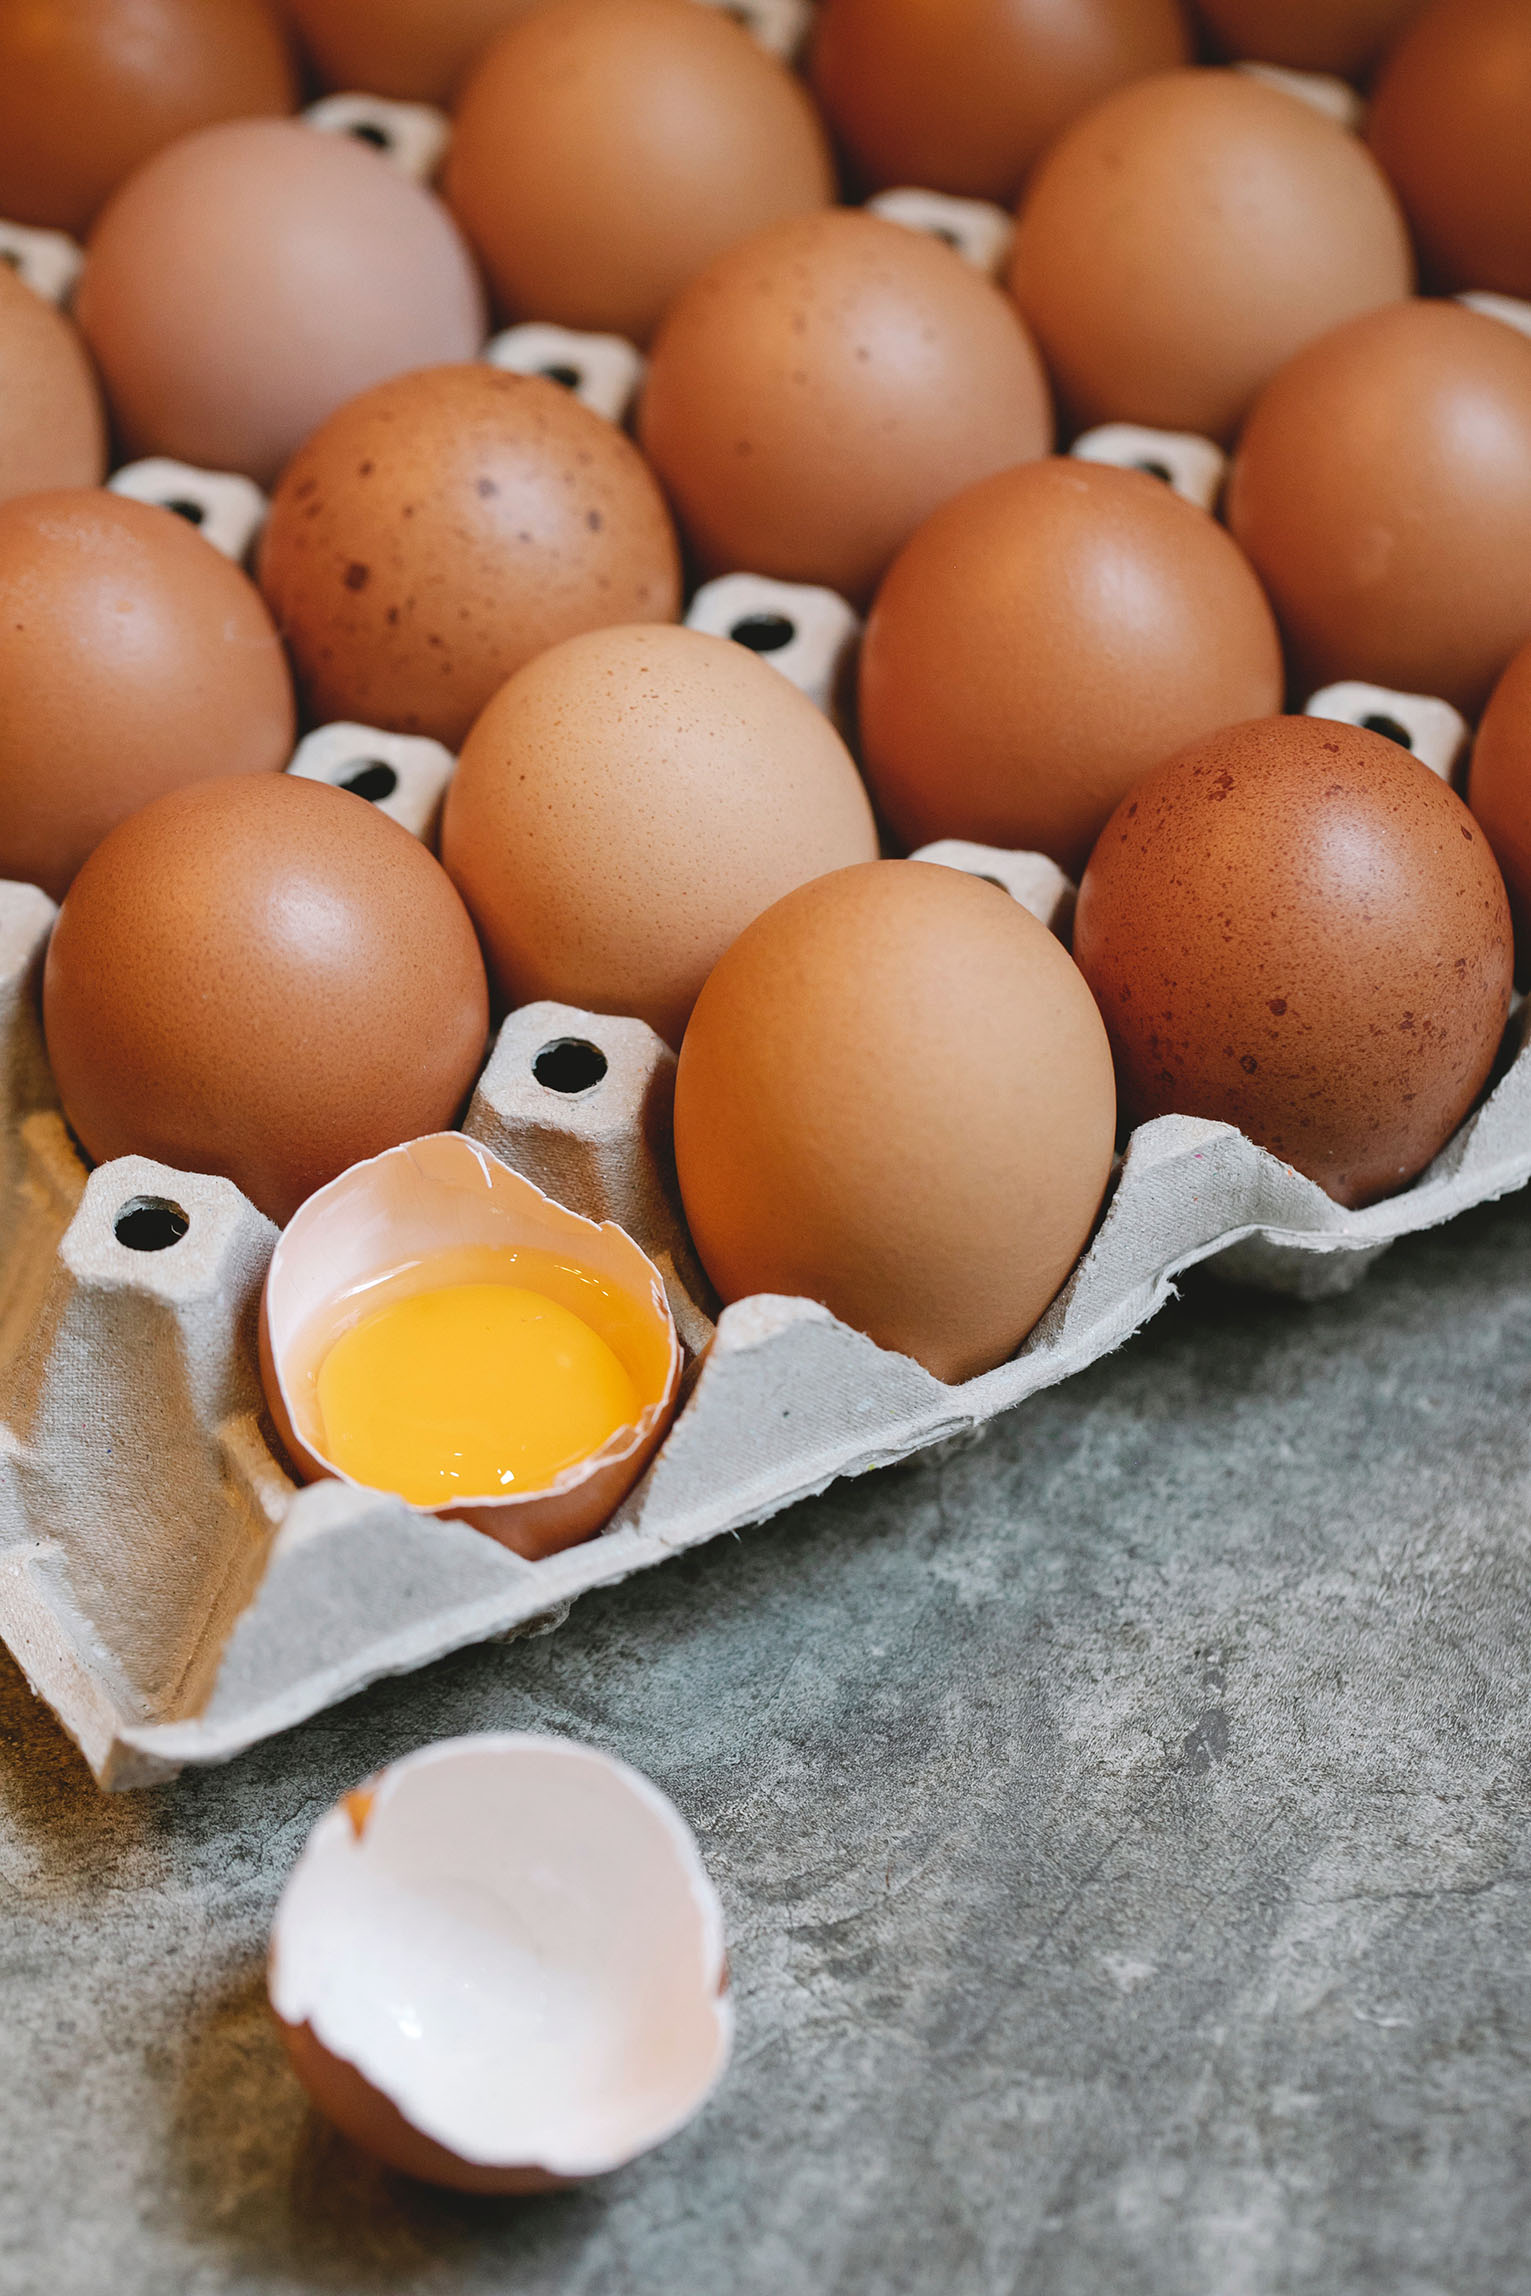 Harga Telur di Kota Metro Naik, Omset Menurun Hingga 50 Persen